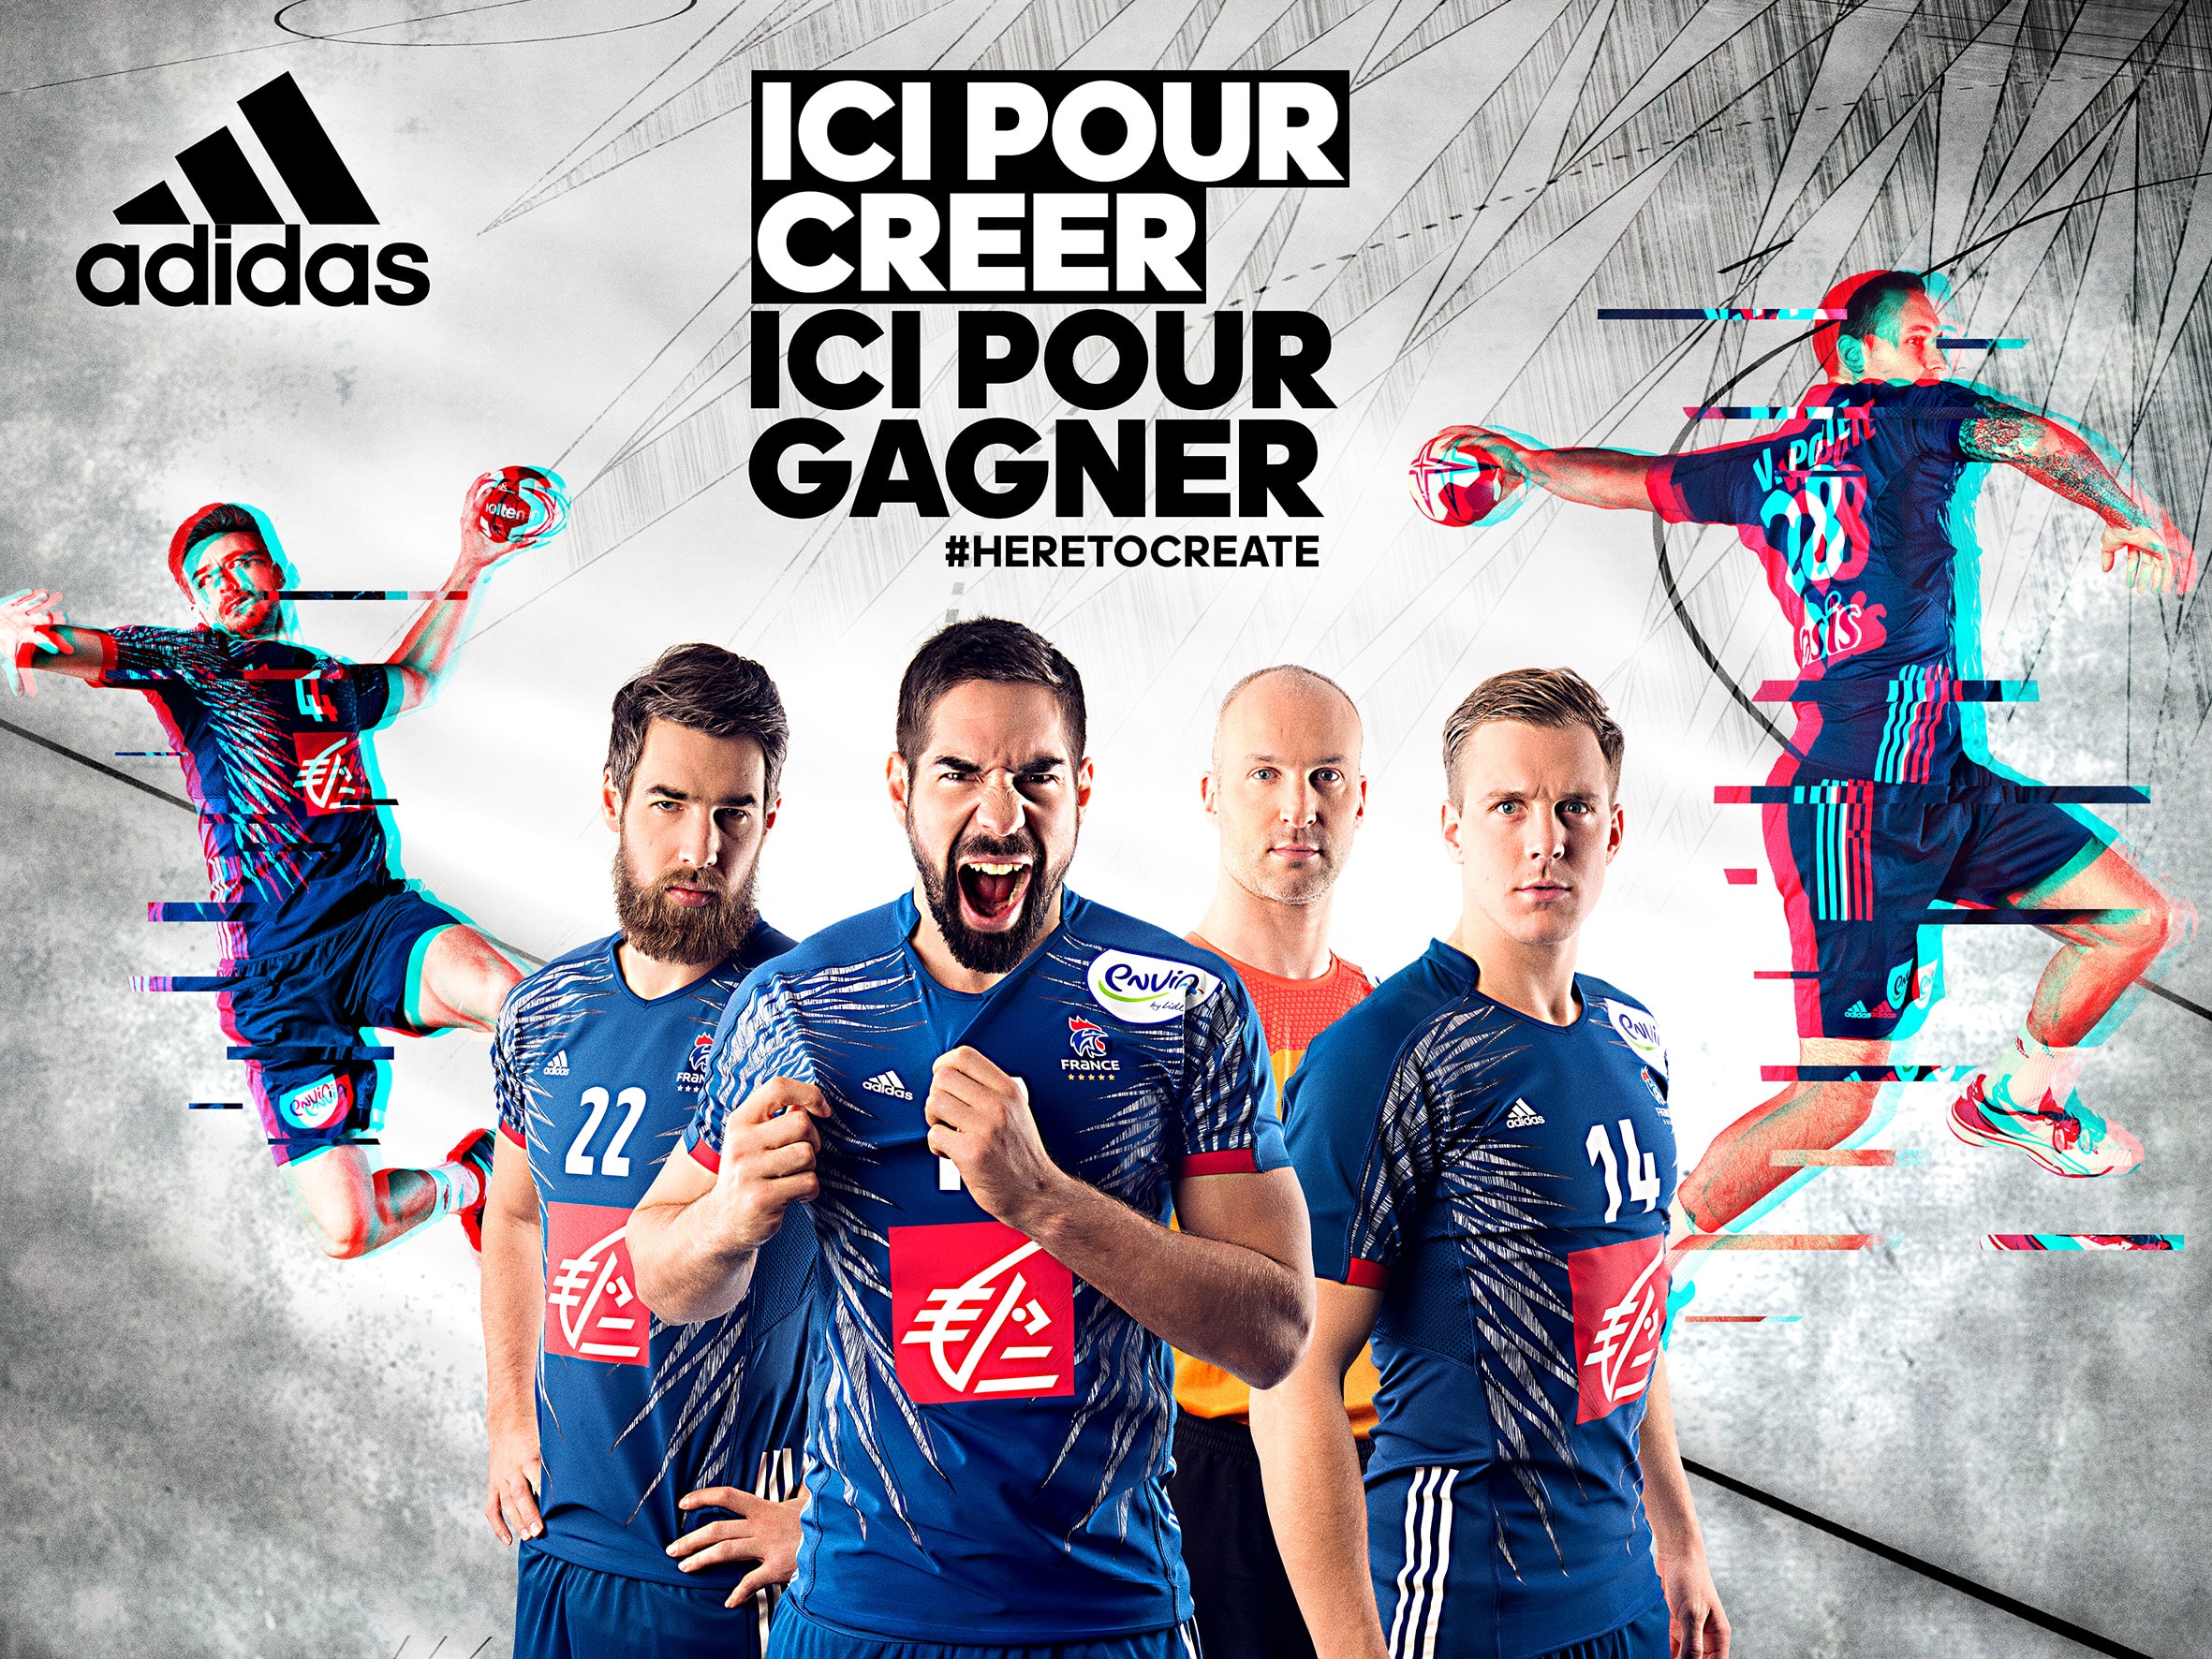 Adidas partenaire historique de l'Équipe de France de Handball